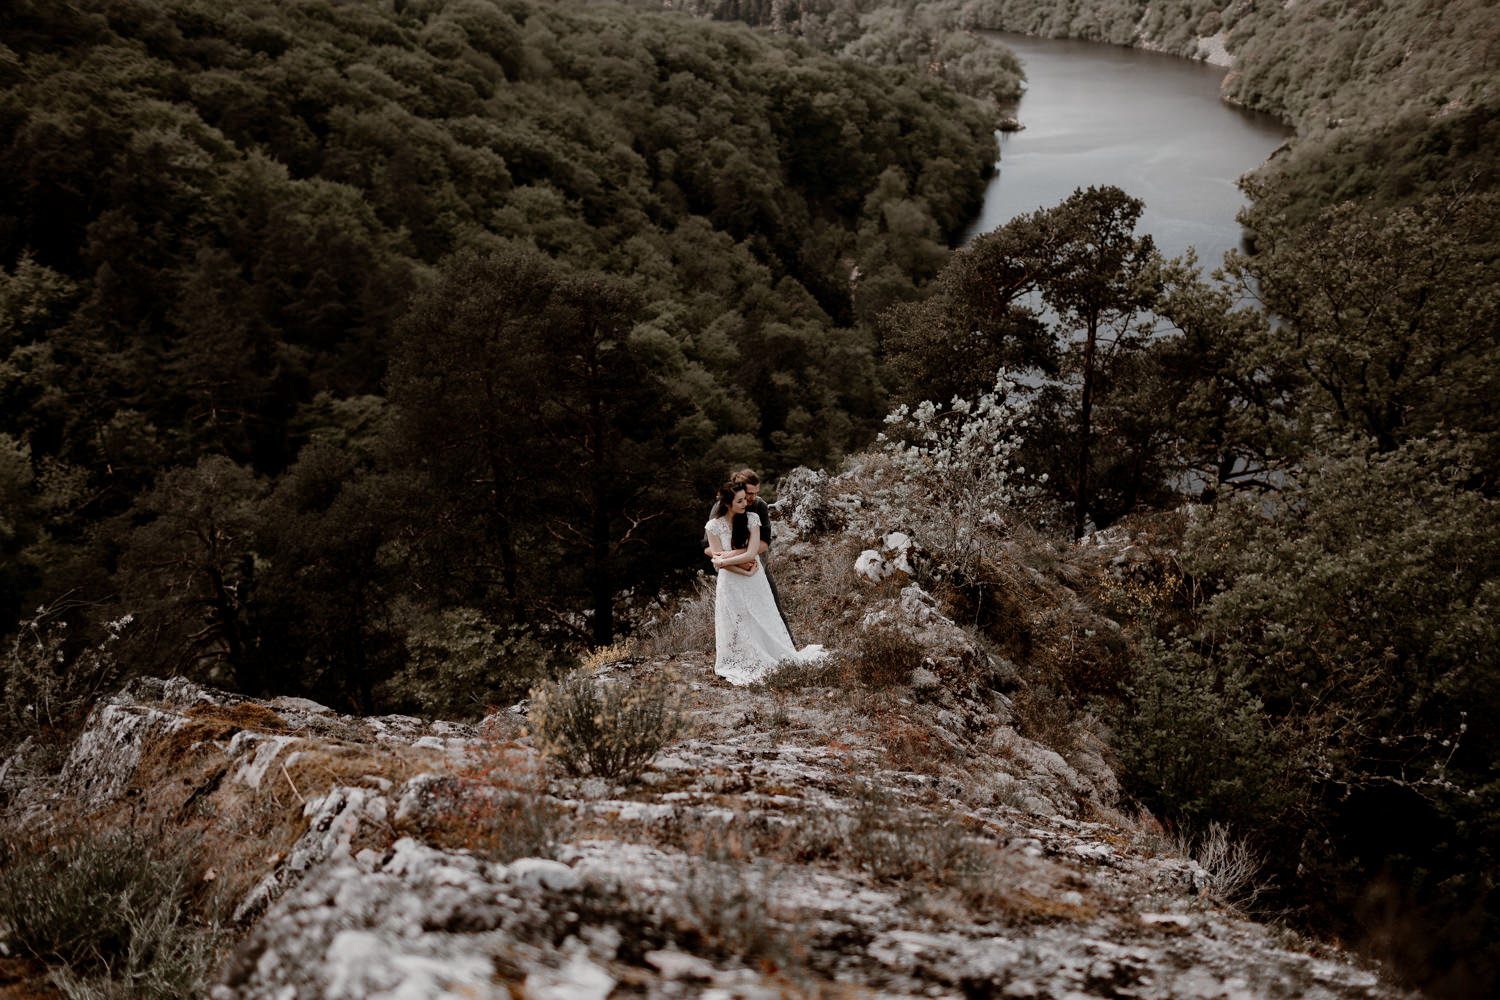 Photographe mariage Lyon - Photographe mariage Auvergne - Mariage dans la nature - Mariage éthique - Cabane Mariage - le bois basalte - paysage volcanique